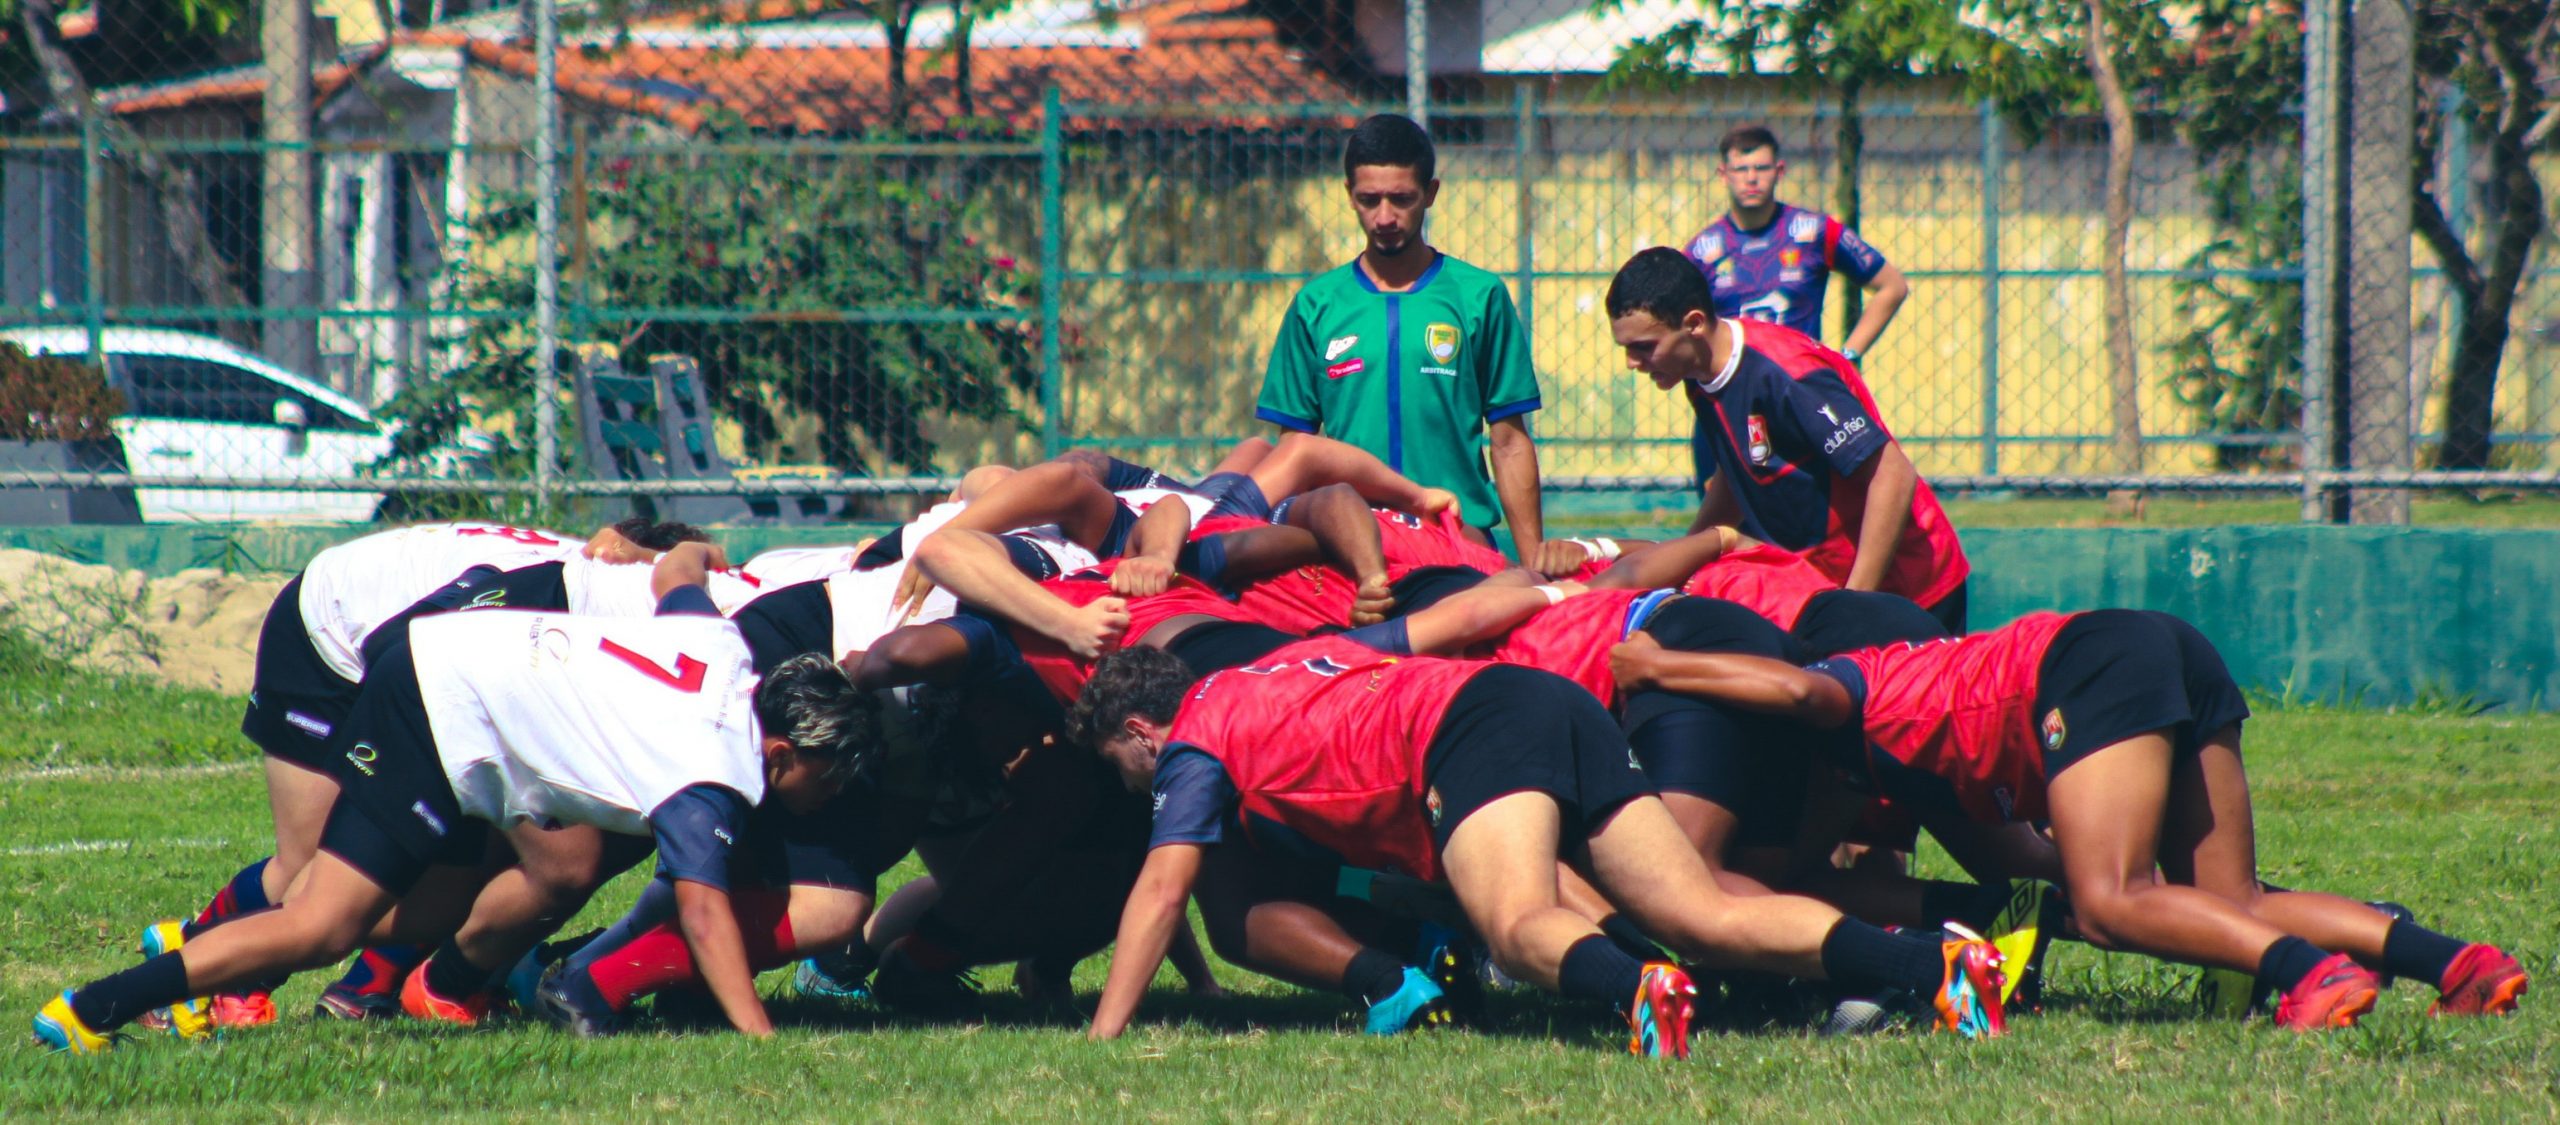 São José dos Campos recebe a grande decisão do Campeonato Brasileiro Sub 19 Masculino de Rugby XV